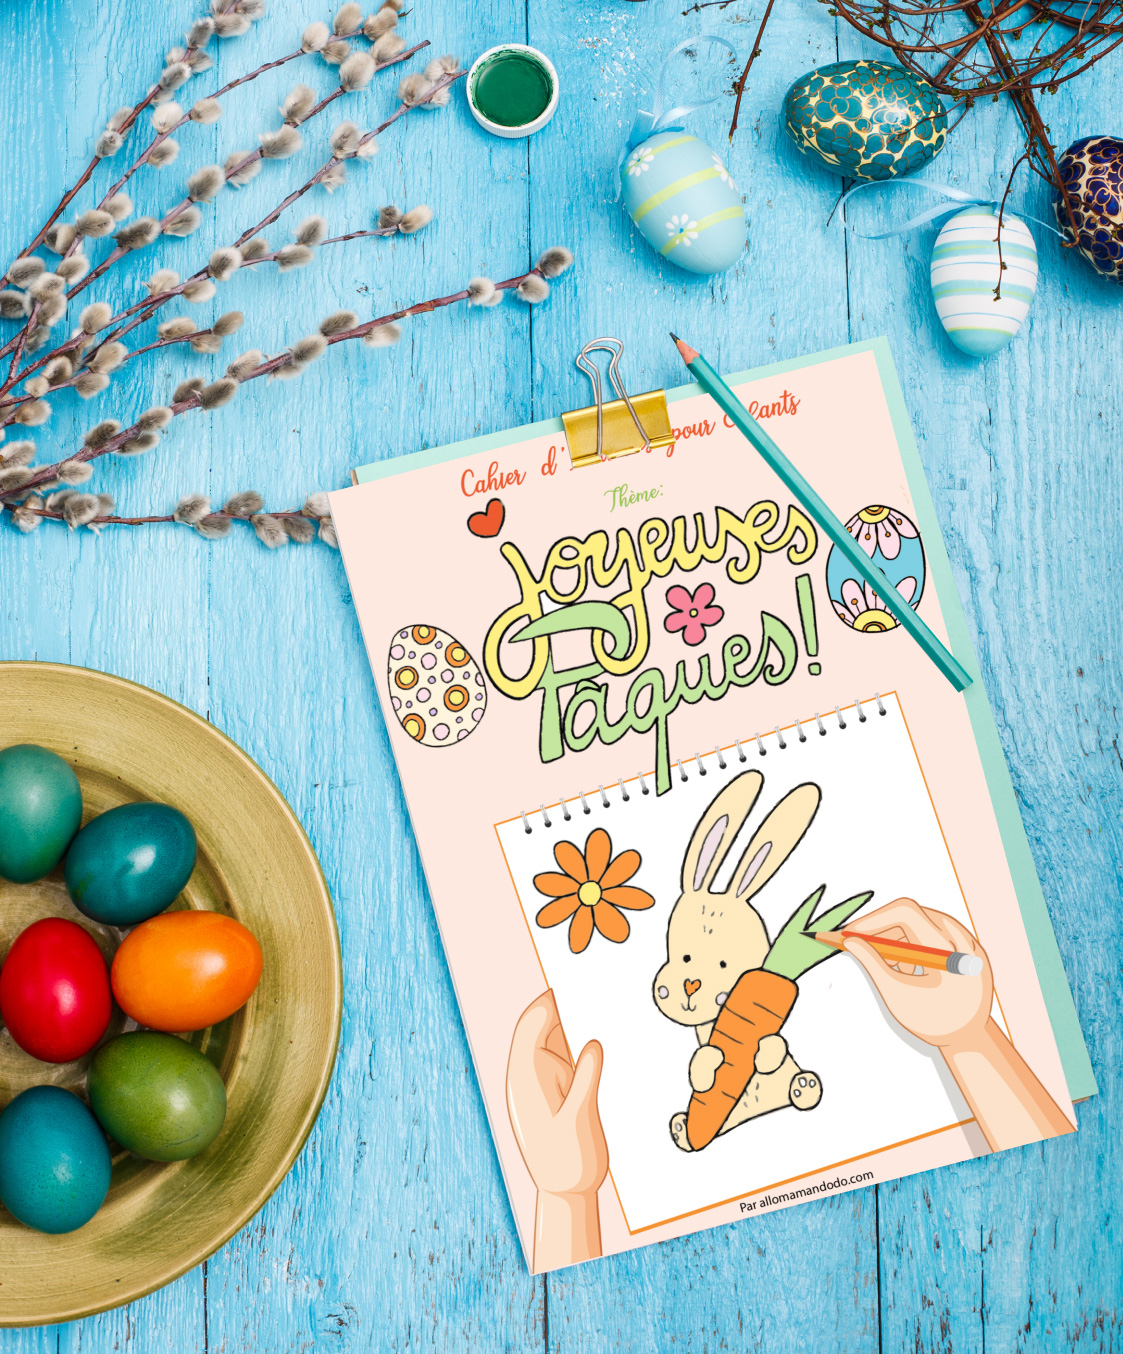 Cahier d'Activités de Pâques pour Enfants